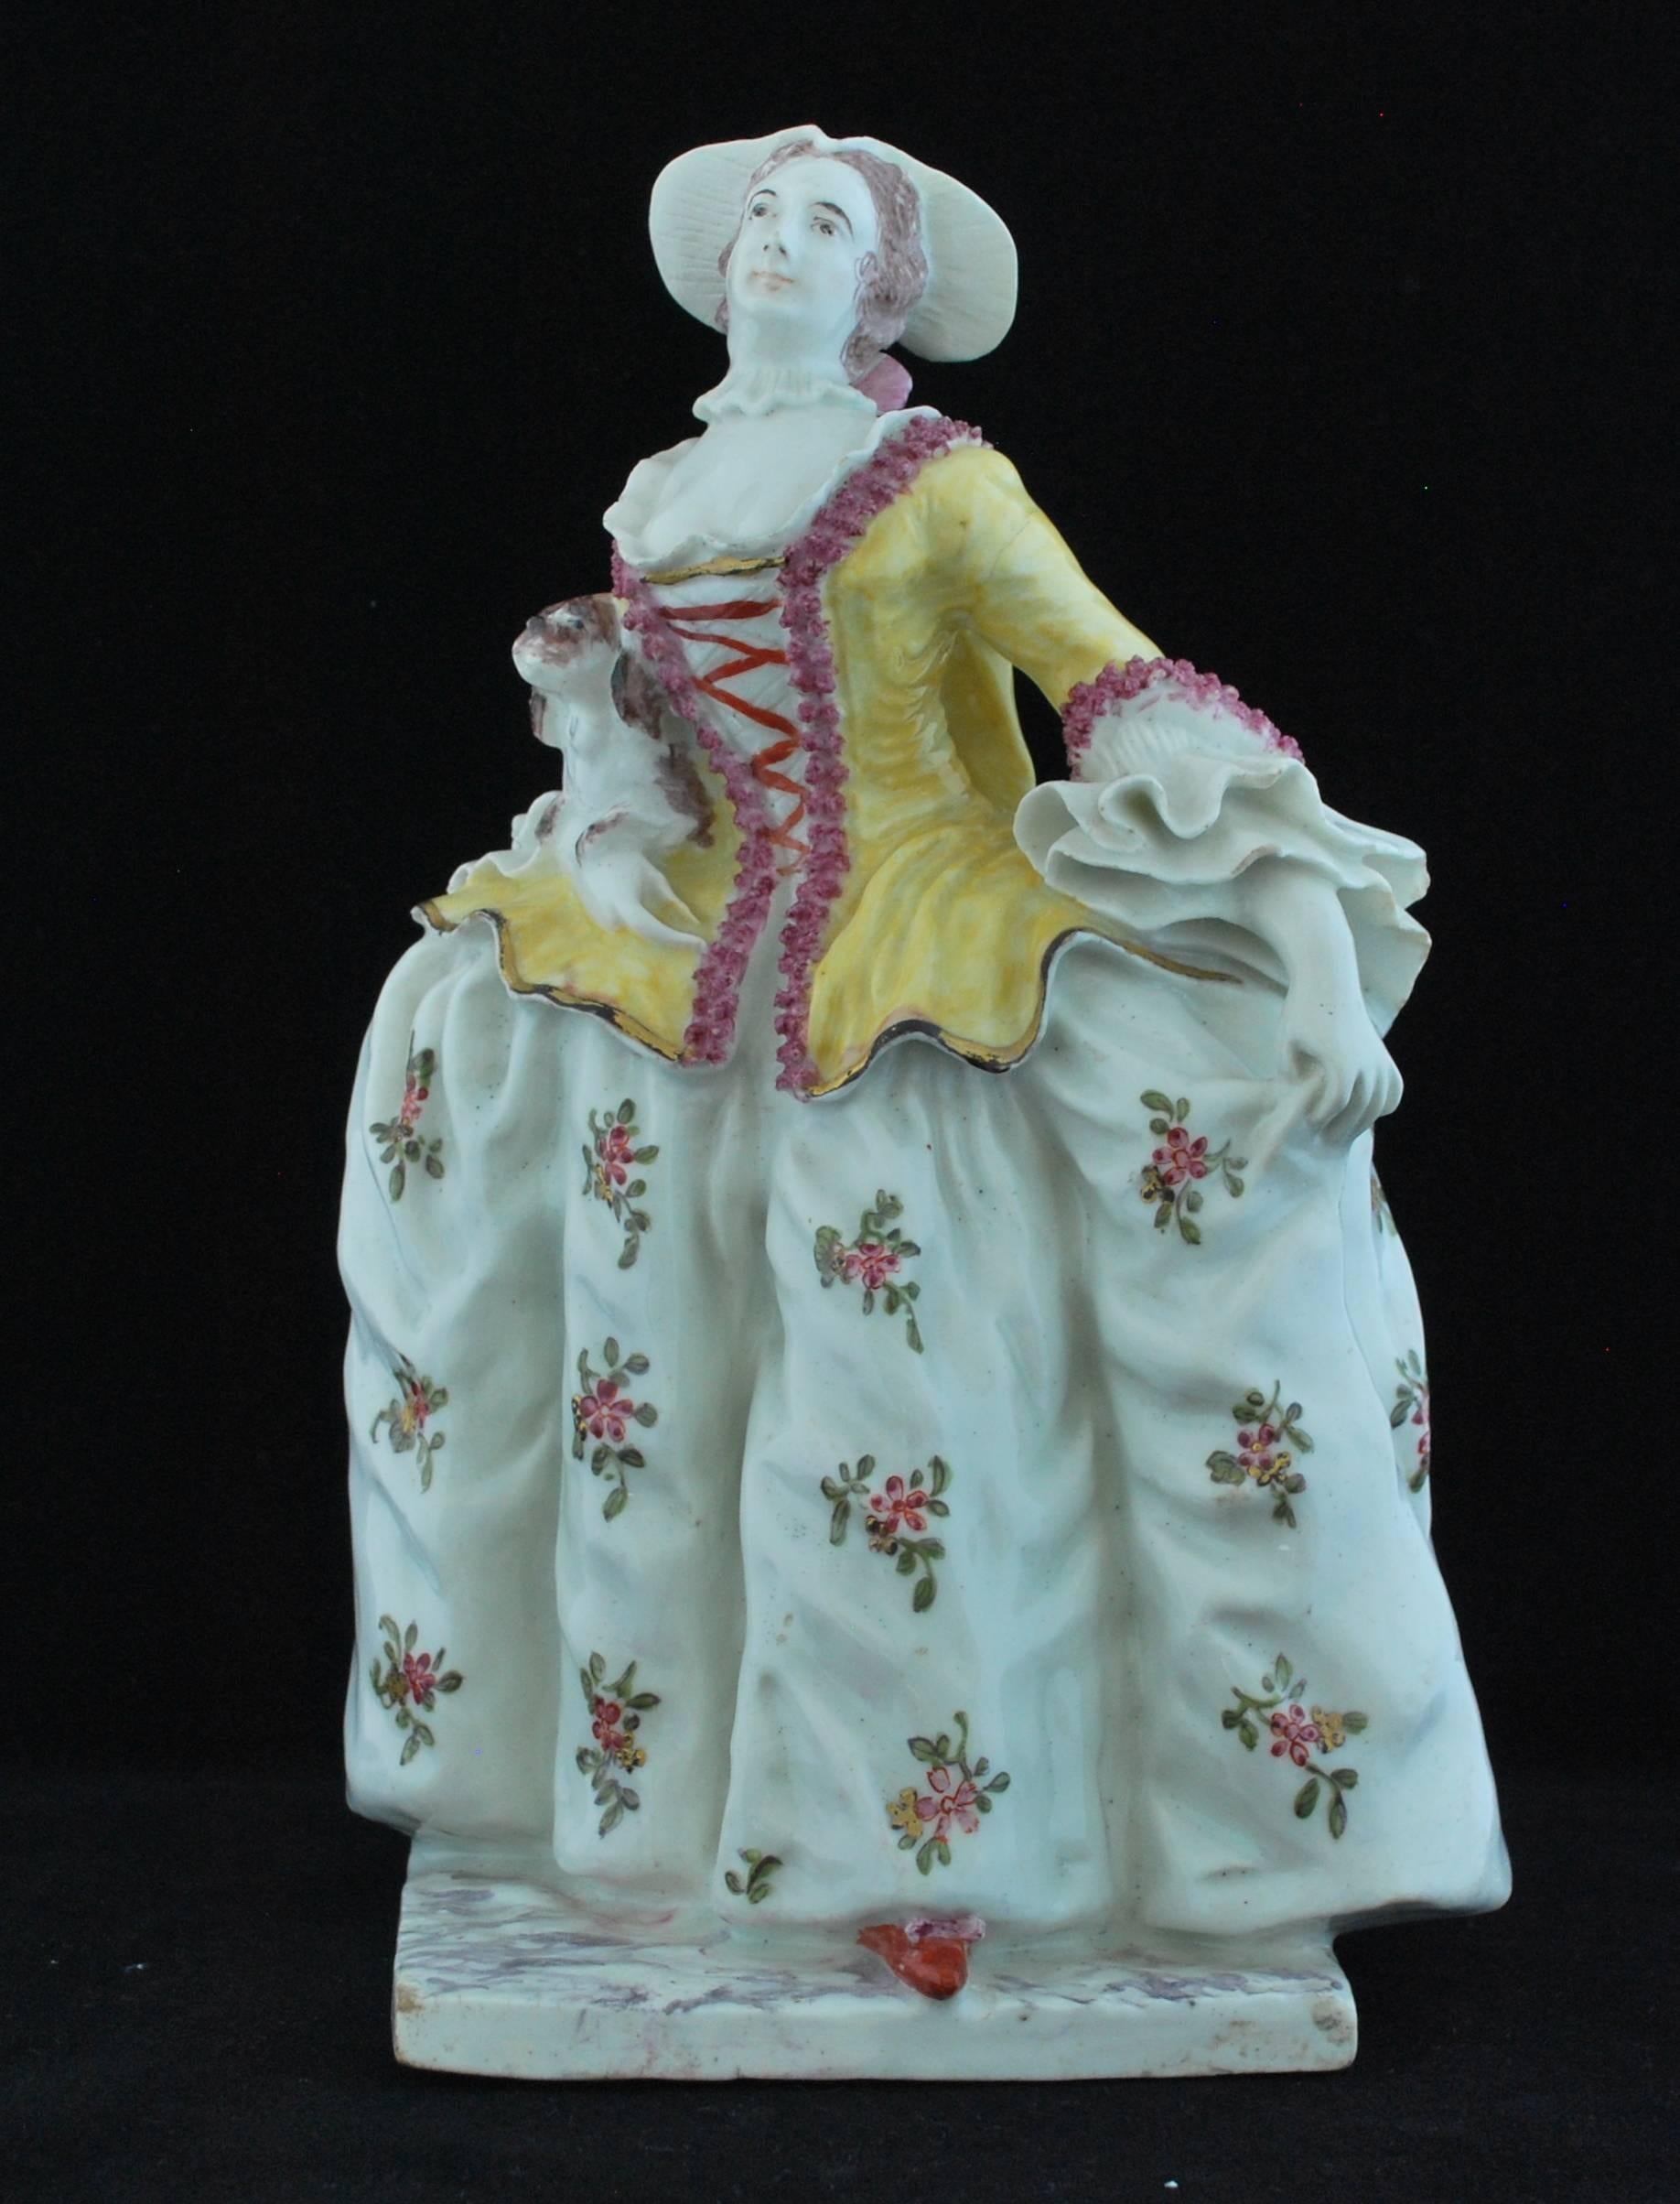 Eine der theatralischen Figuren von Bow.

Die Schauspielerin Mrs. Catherine (Kitty) Clive, 1711-1785, als Mrs. Riot, die feine Dame, die 1749 zusammen mit dem feinen Gentleman in David Garricks Farce Lethe eingeführt wurde; die Figur stammt von